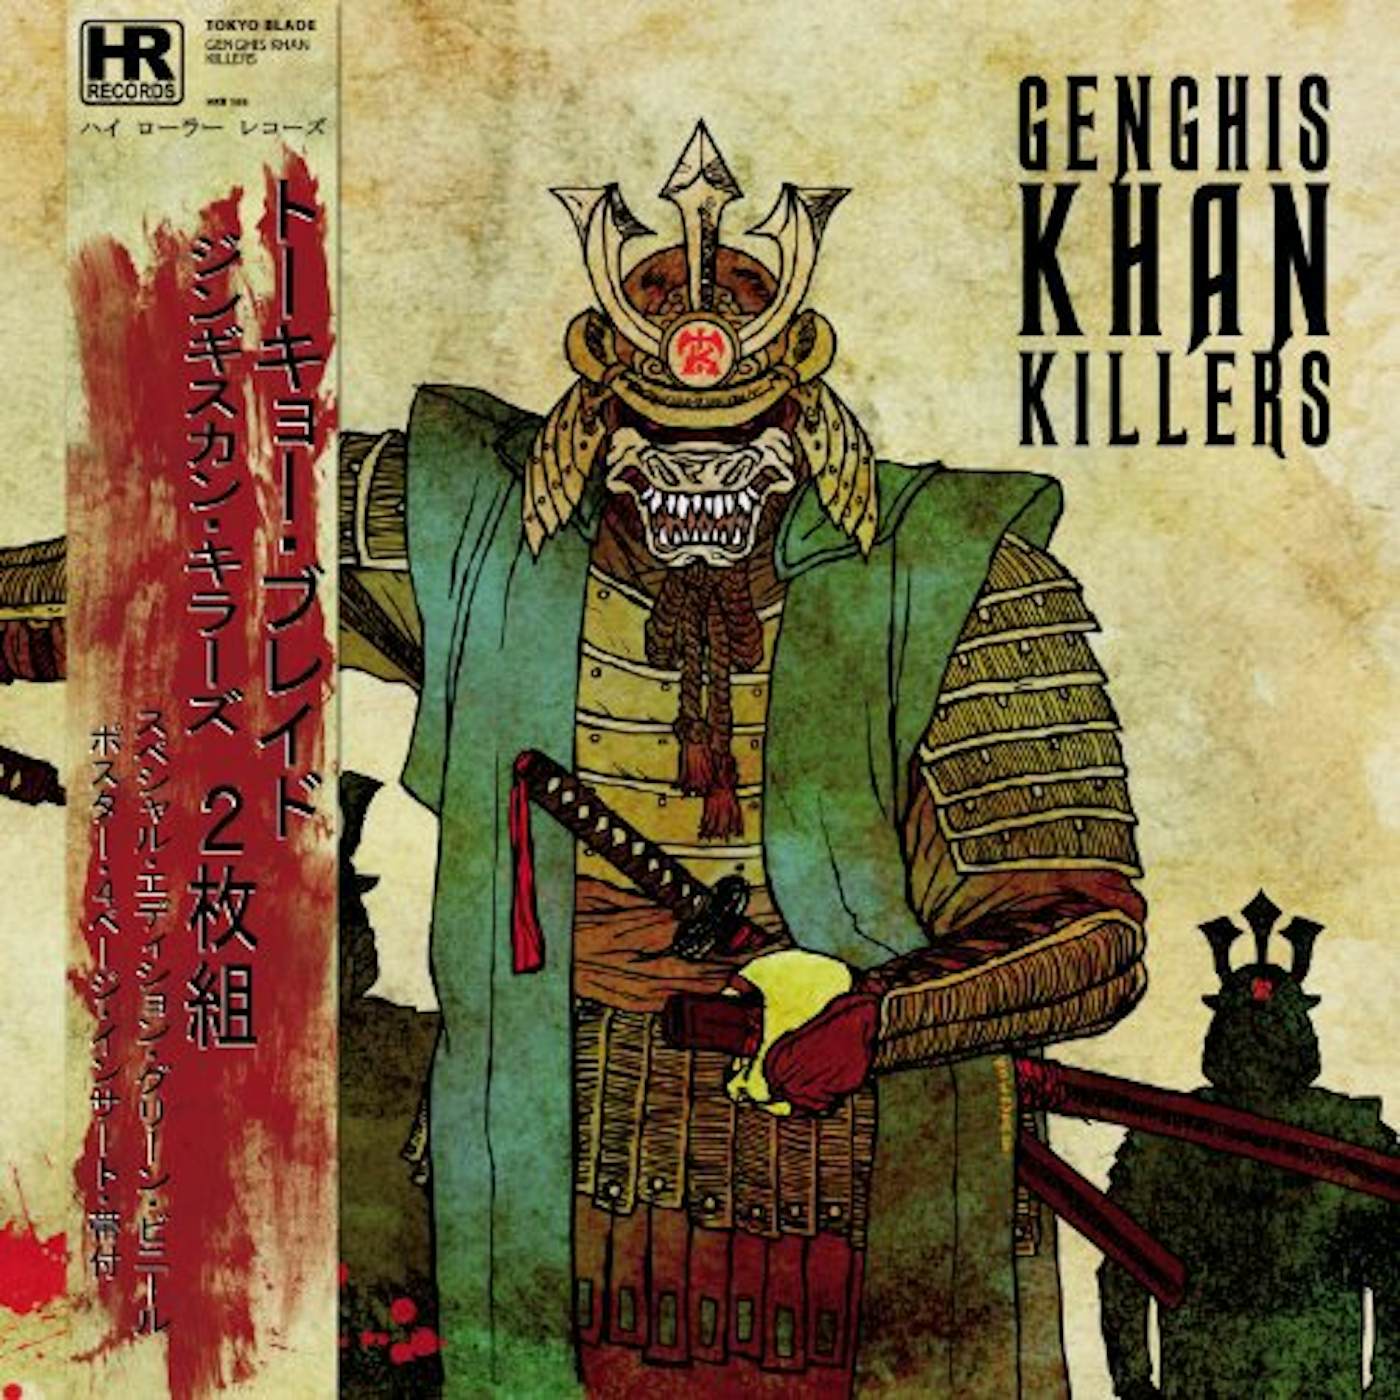 Tokyo Blade GENGHIS KHAN KILLERS (GREEN VINYL) Vinyl Record